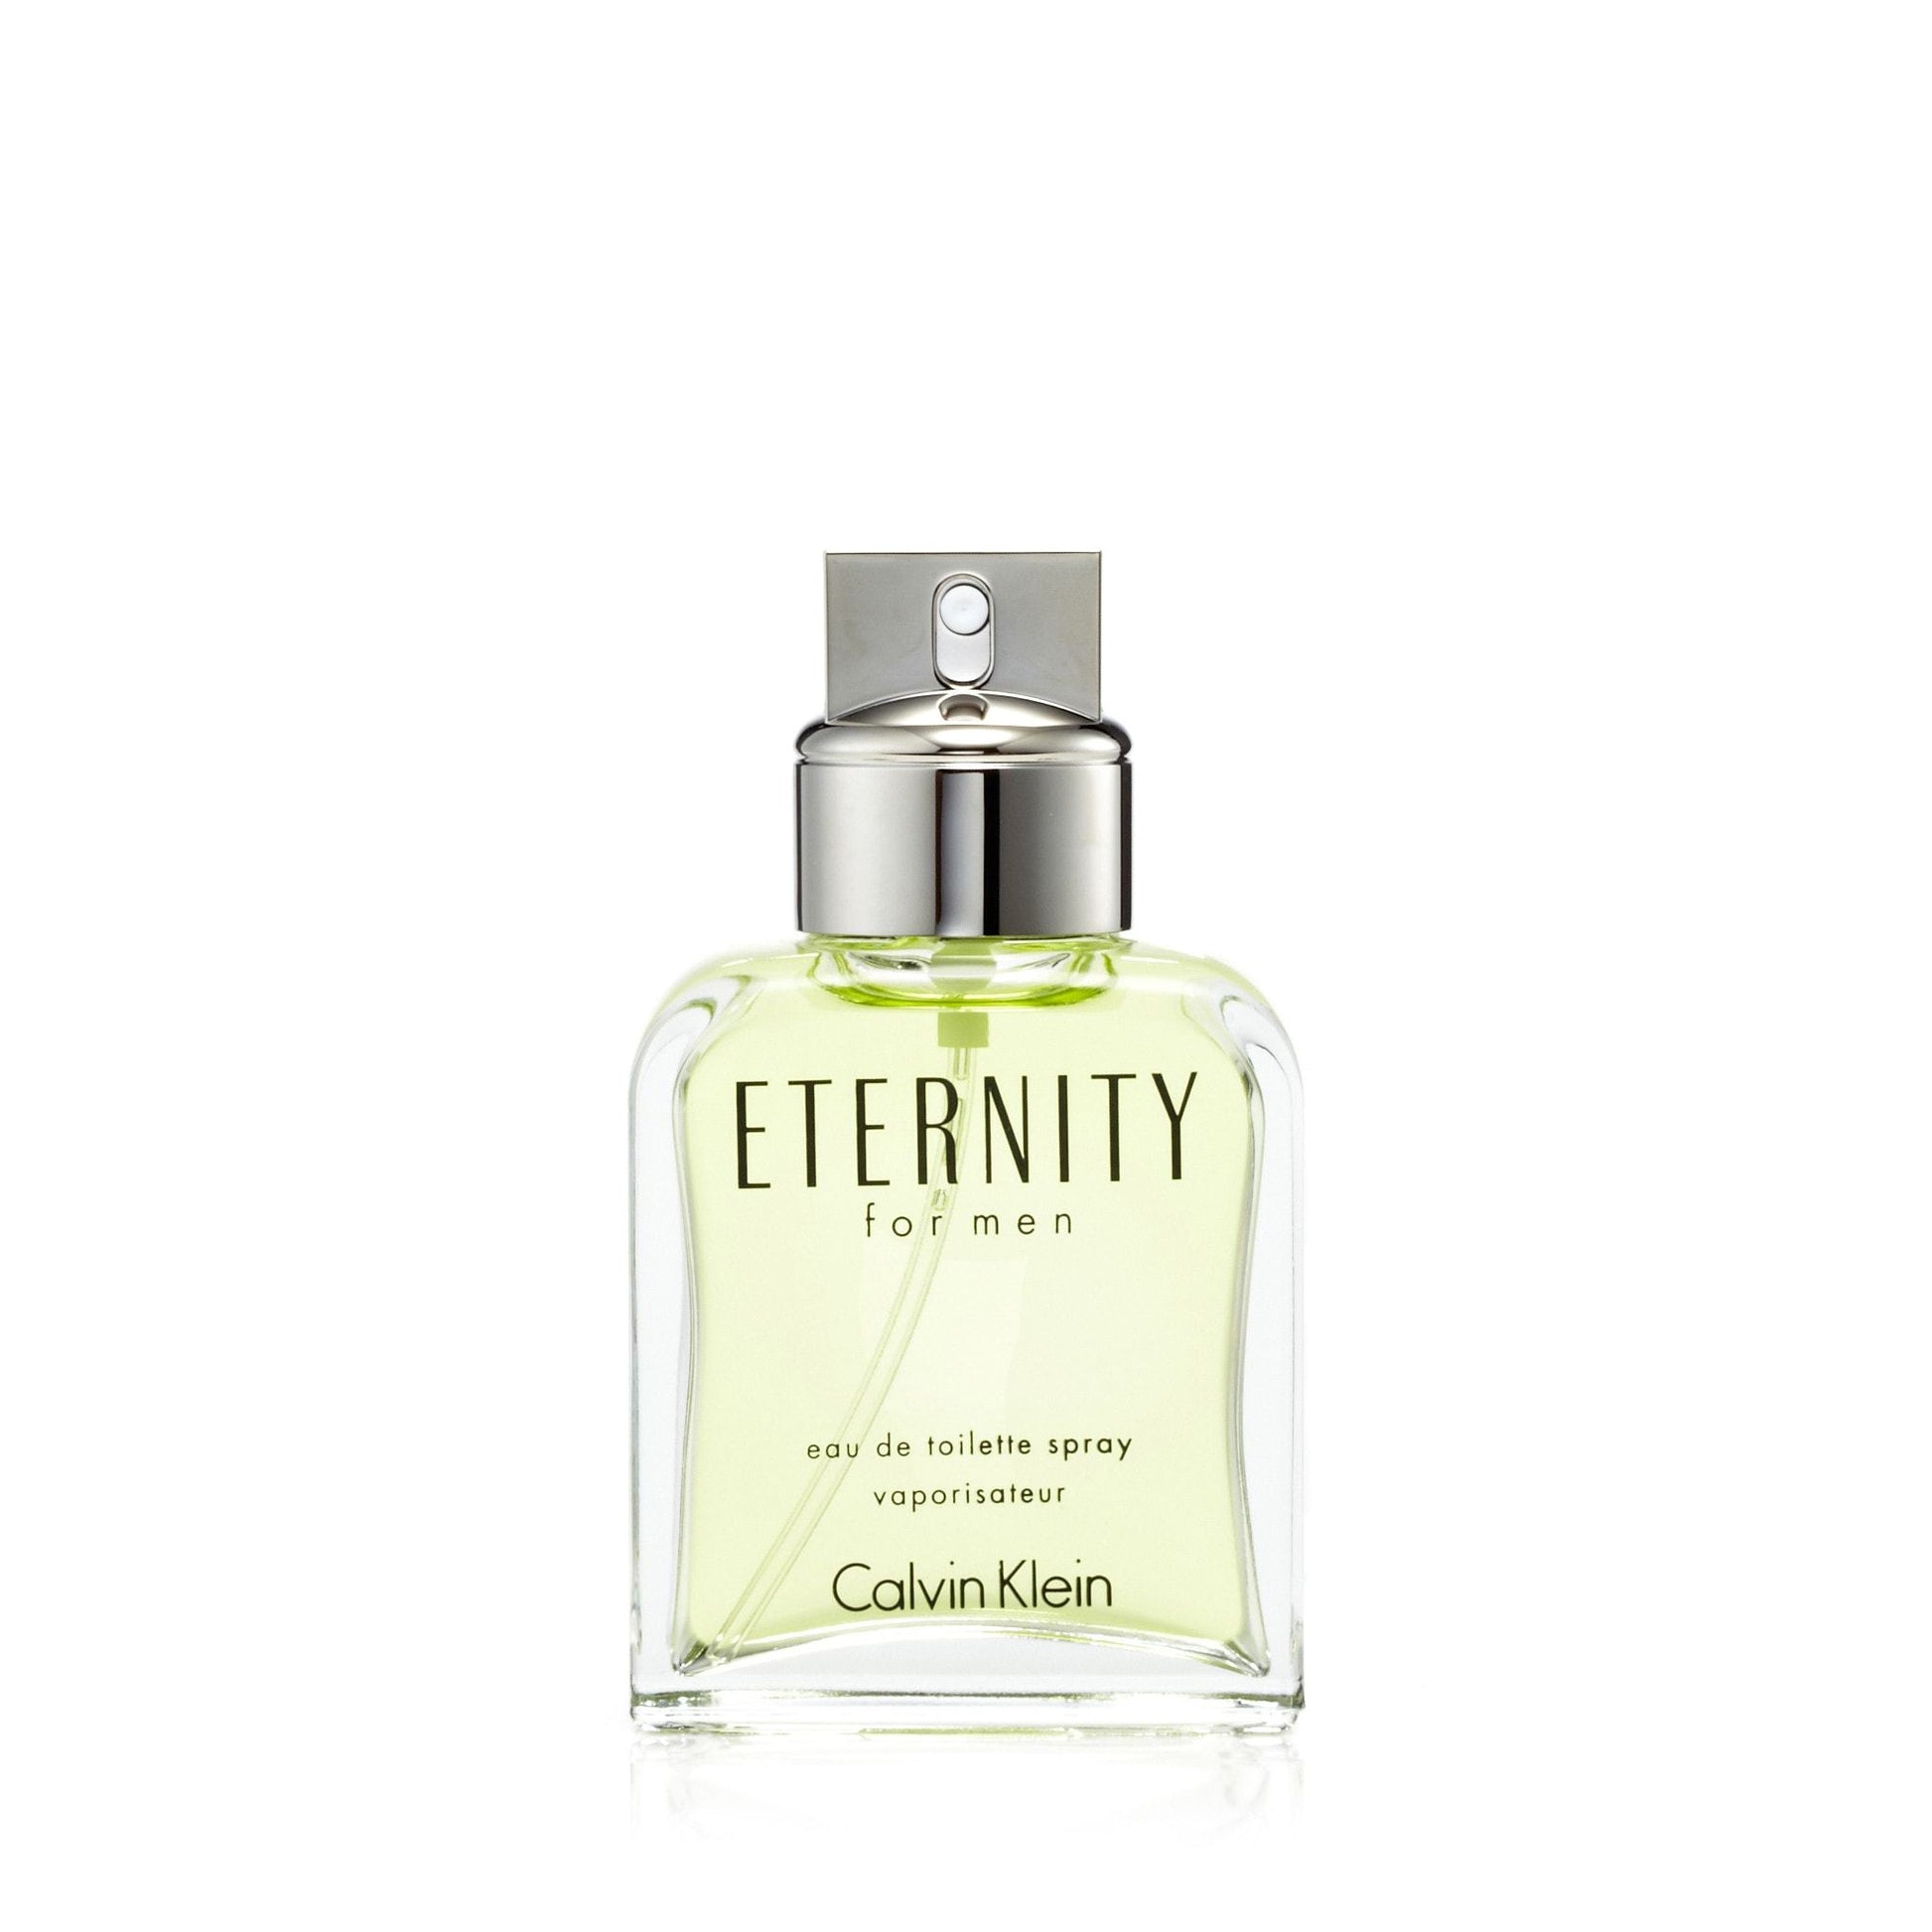 Eternity Eau de Toilette Spray for Men by Calvin Klein, Product image 5